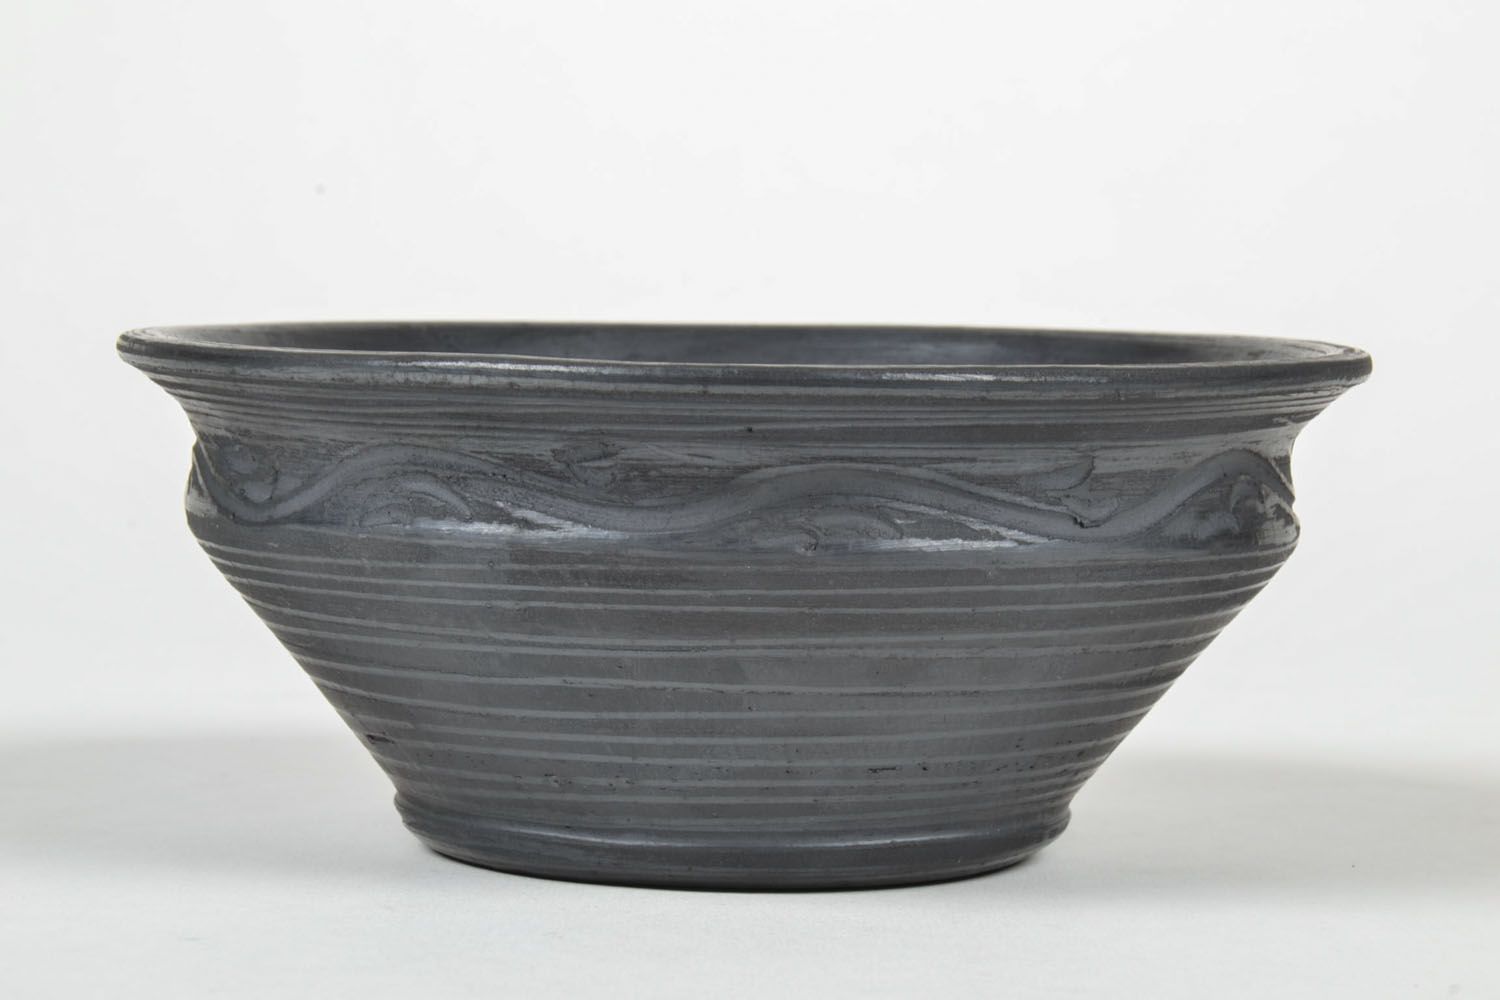 6 3 oz black lead-free ceramic handmade pitch bowl 0,82 lb photo 2